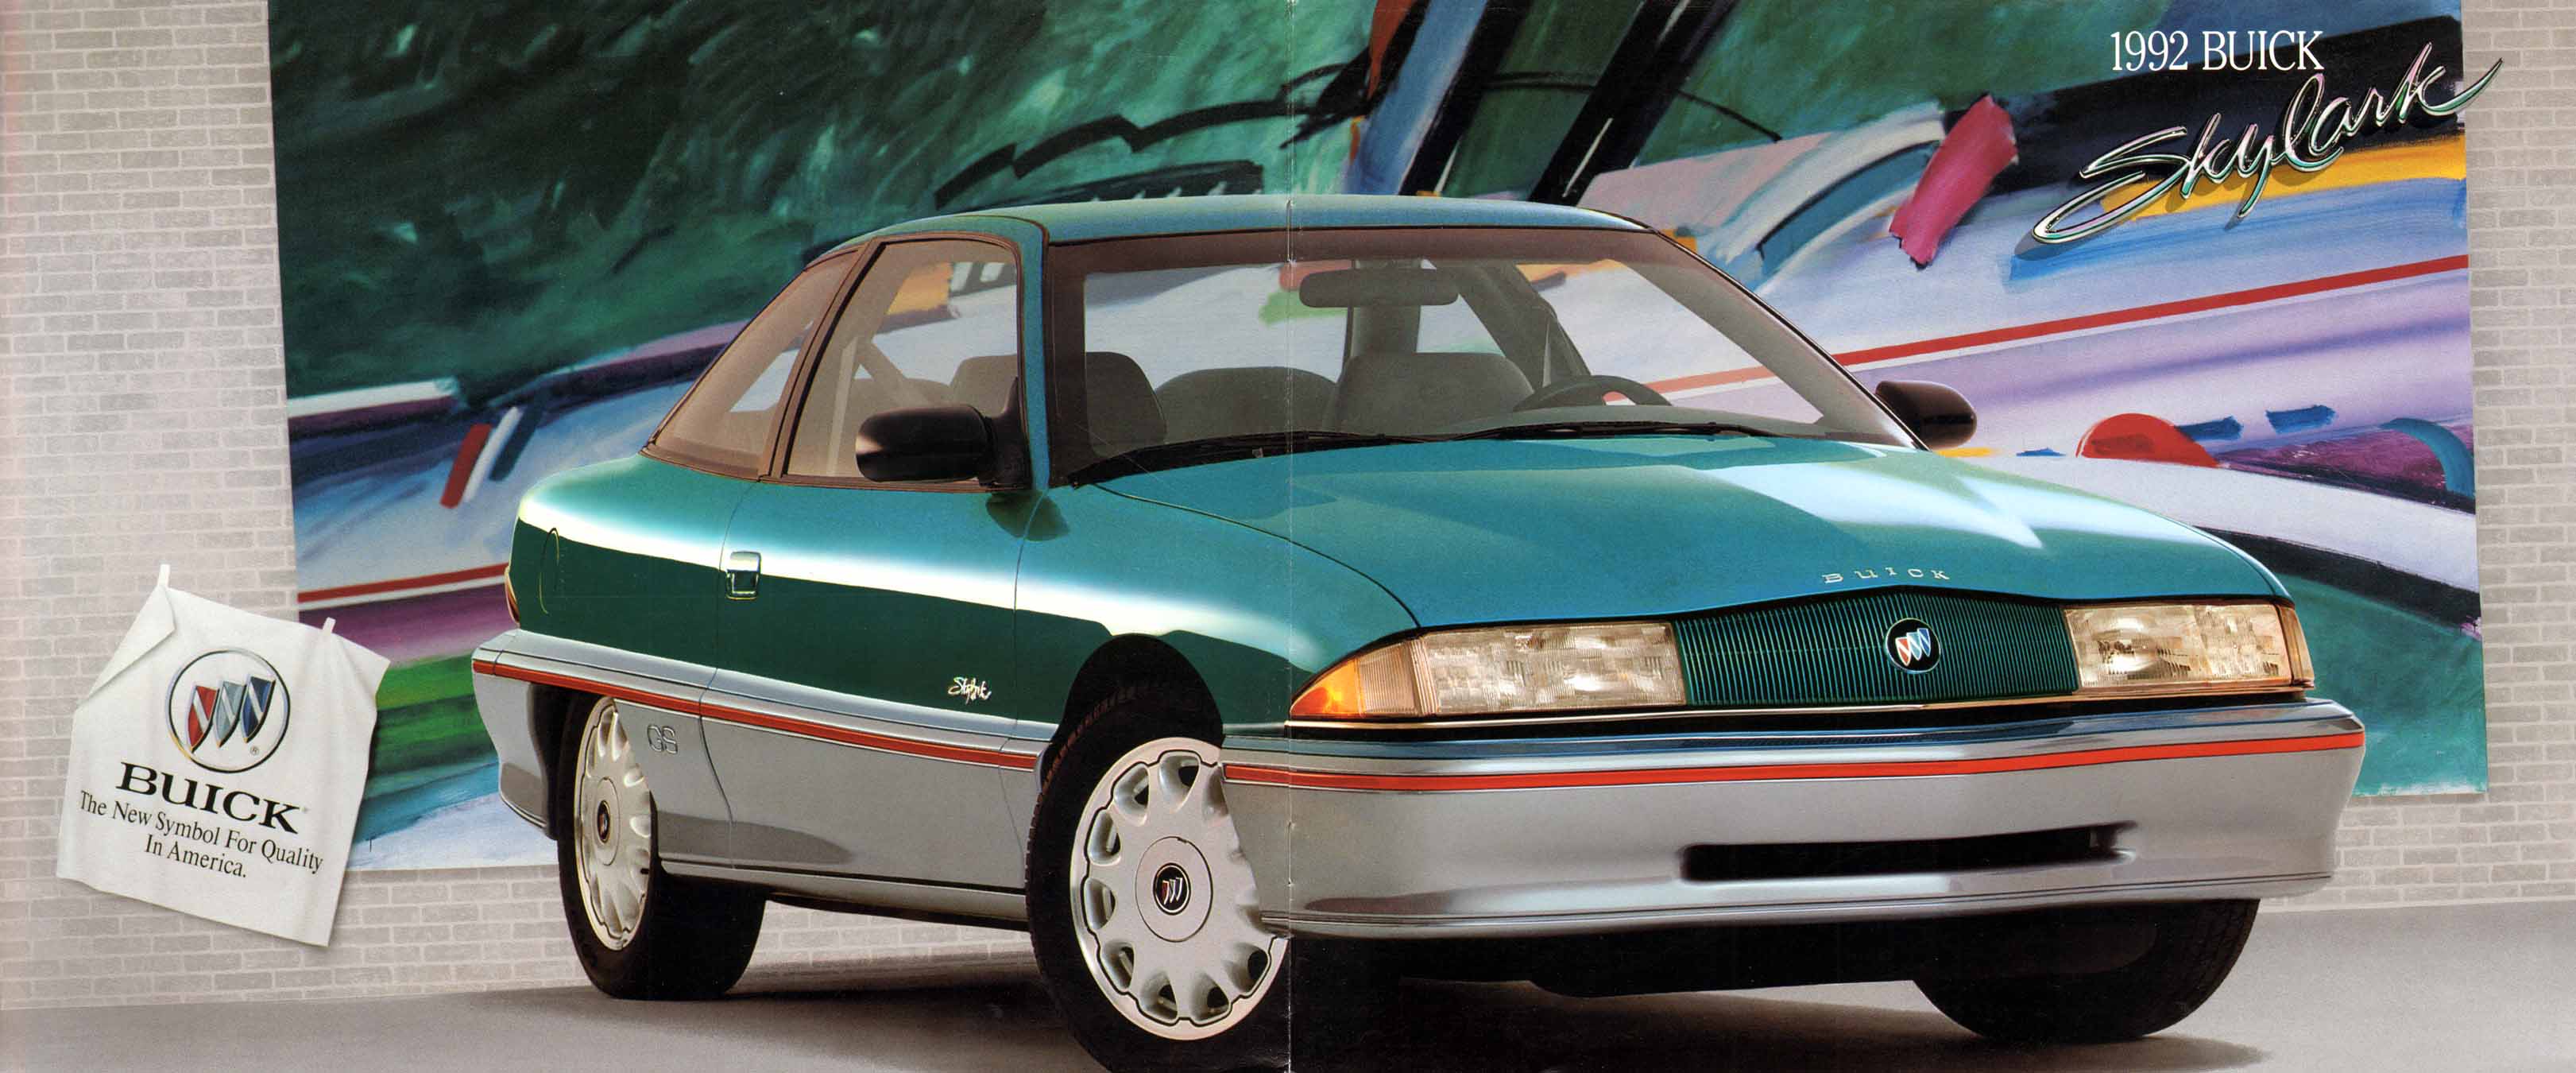 1992 Buick Skylark-10-01